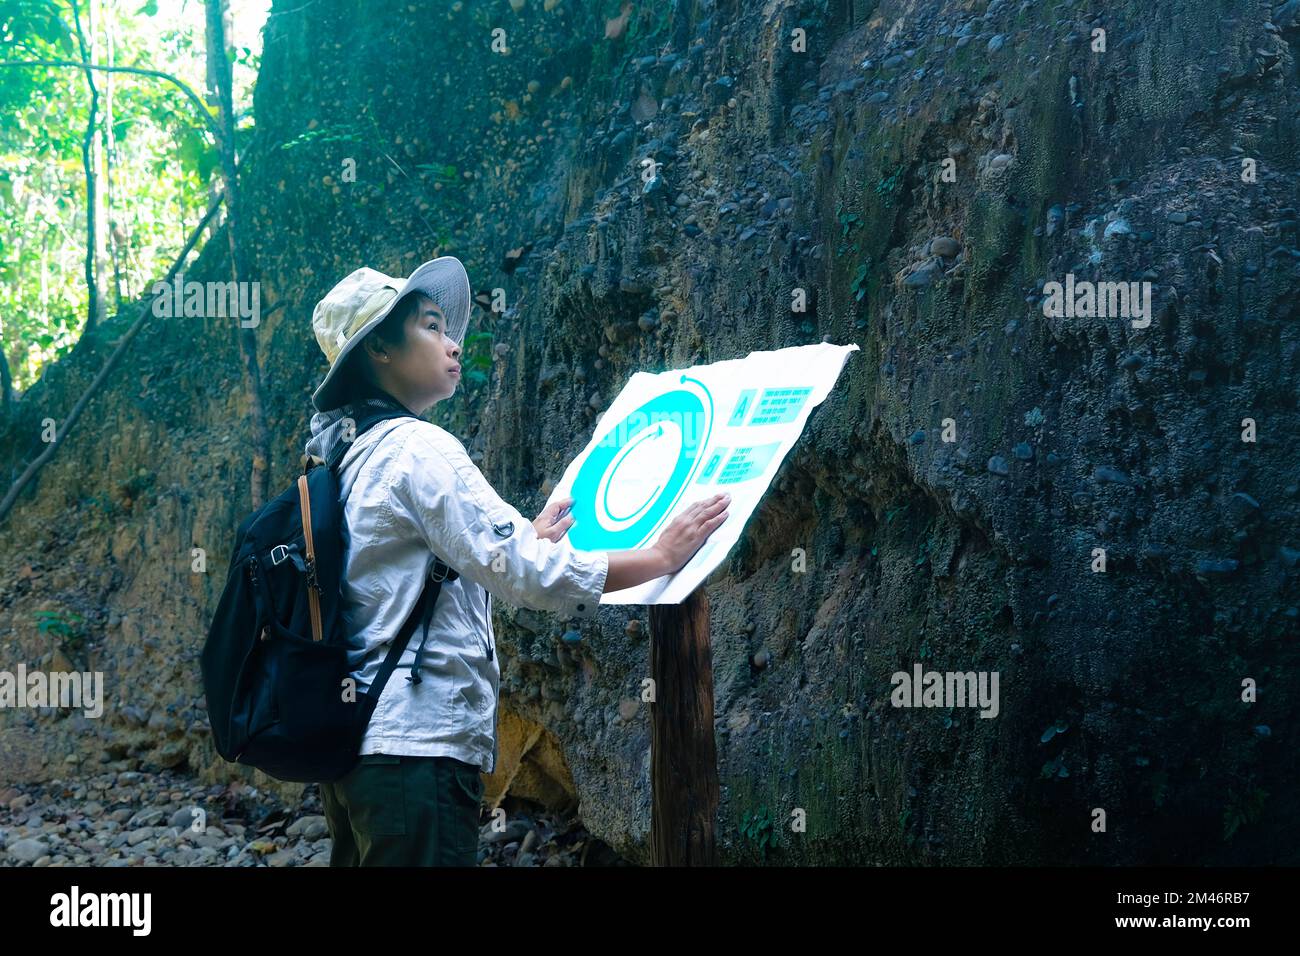 Femme géologue utilisant une carte avec des icônes, examinant un chemin naturel et analysant des roches ou du gravier. Les chercheurs recueillent des échantillons de matériel biologique. FR Banque D'Images